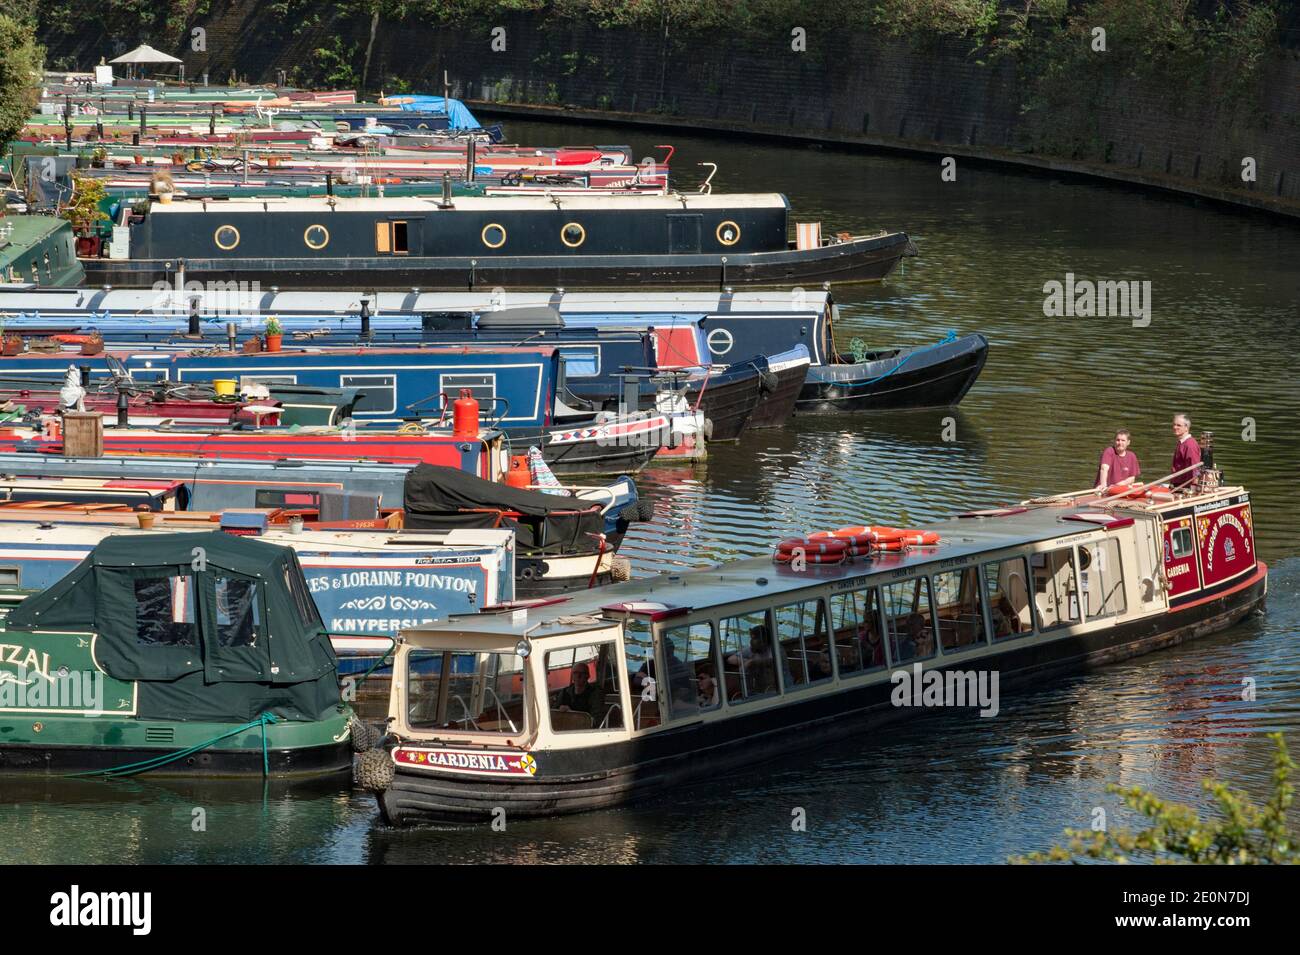 Le Gardenia, l'une des flottes de bateaux touristiques étroits appartenant à la London Waterbus Company, passe les bateaux de la maison amarrés en permanence juste à côté de Lisso Banque D'Images